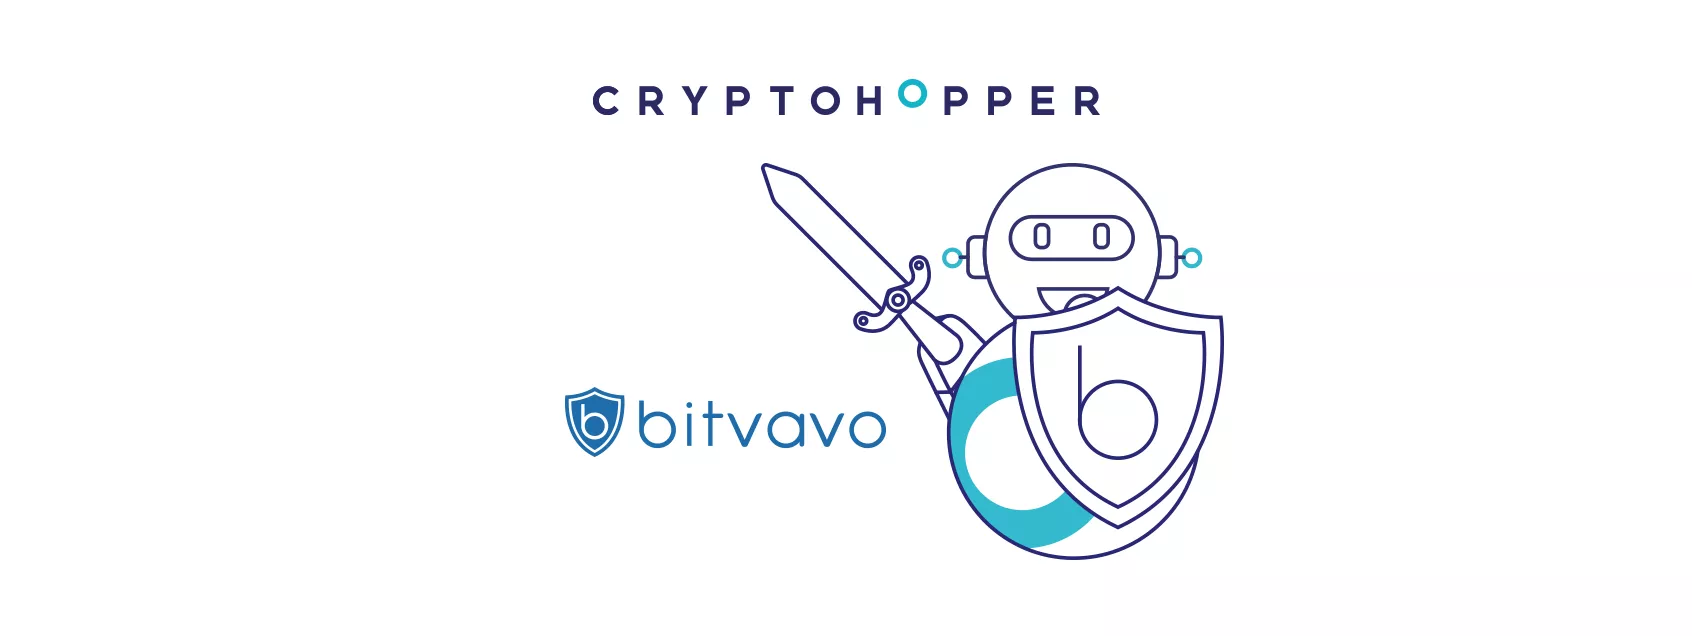 Bitvavo en Cryptohopper kondigen Samenwerking aan